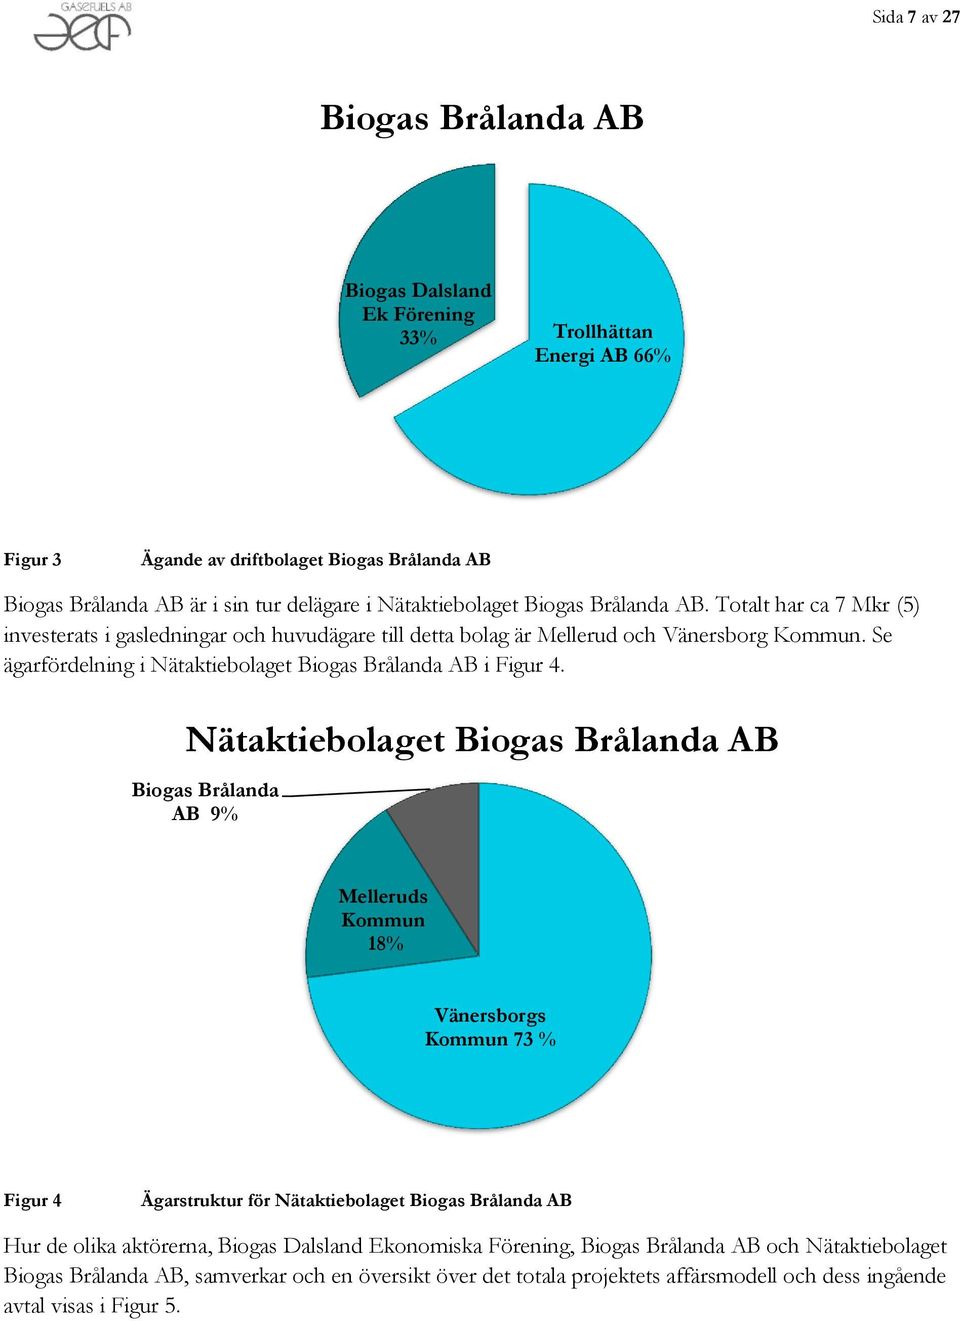 Se ägarfördelning i Nätaktiebolaget Biogas Brålanda AB i Figur 4.